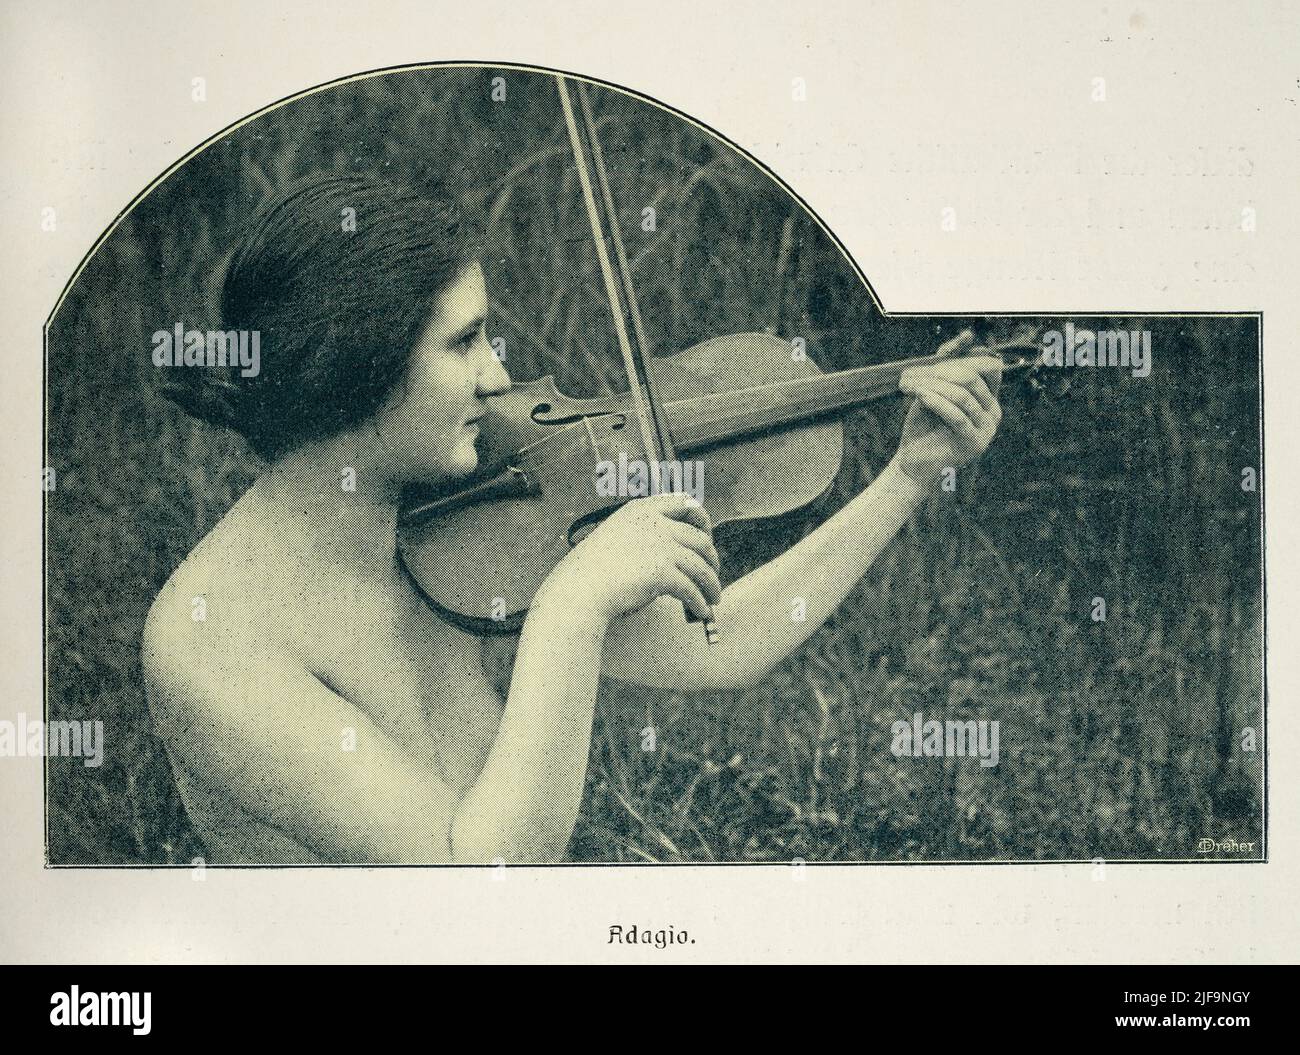 Fotografía antigua de una mujer desnuda tocando el violín, violinista, alemana, 1900s. Estudio de la belleza femenina. Adagio Foto de stock